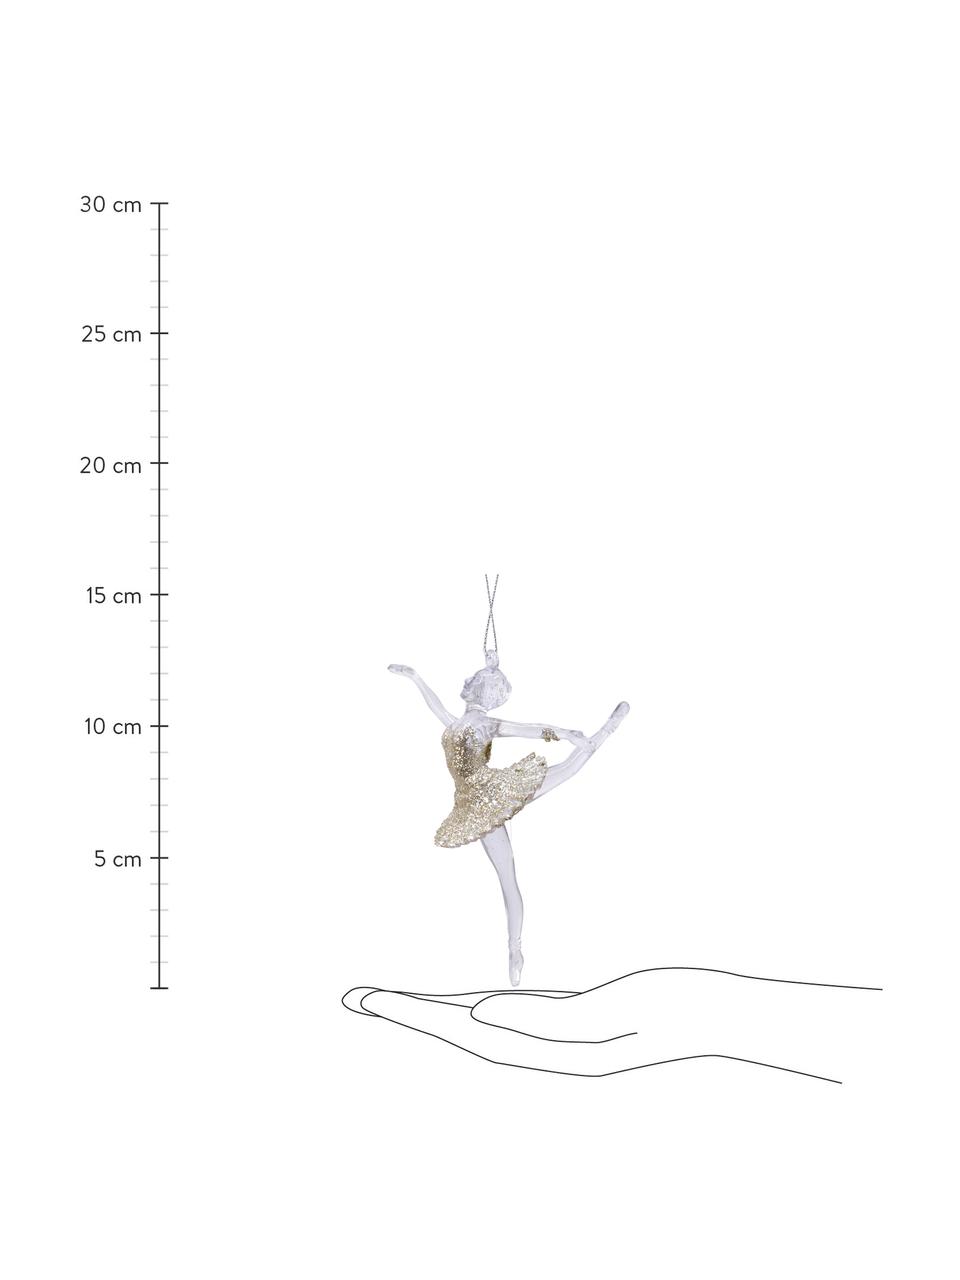 Set 2 addobbi di Natale infrangibili Ballerina, alt. 13 cm, Dorato, bianco, Ø 9 x Alt. 13 cm